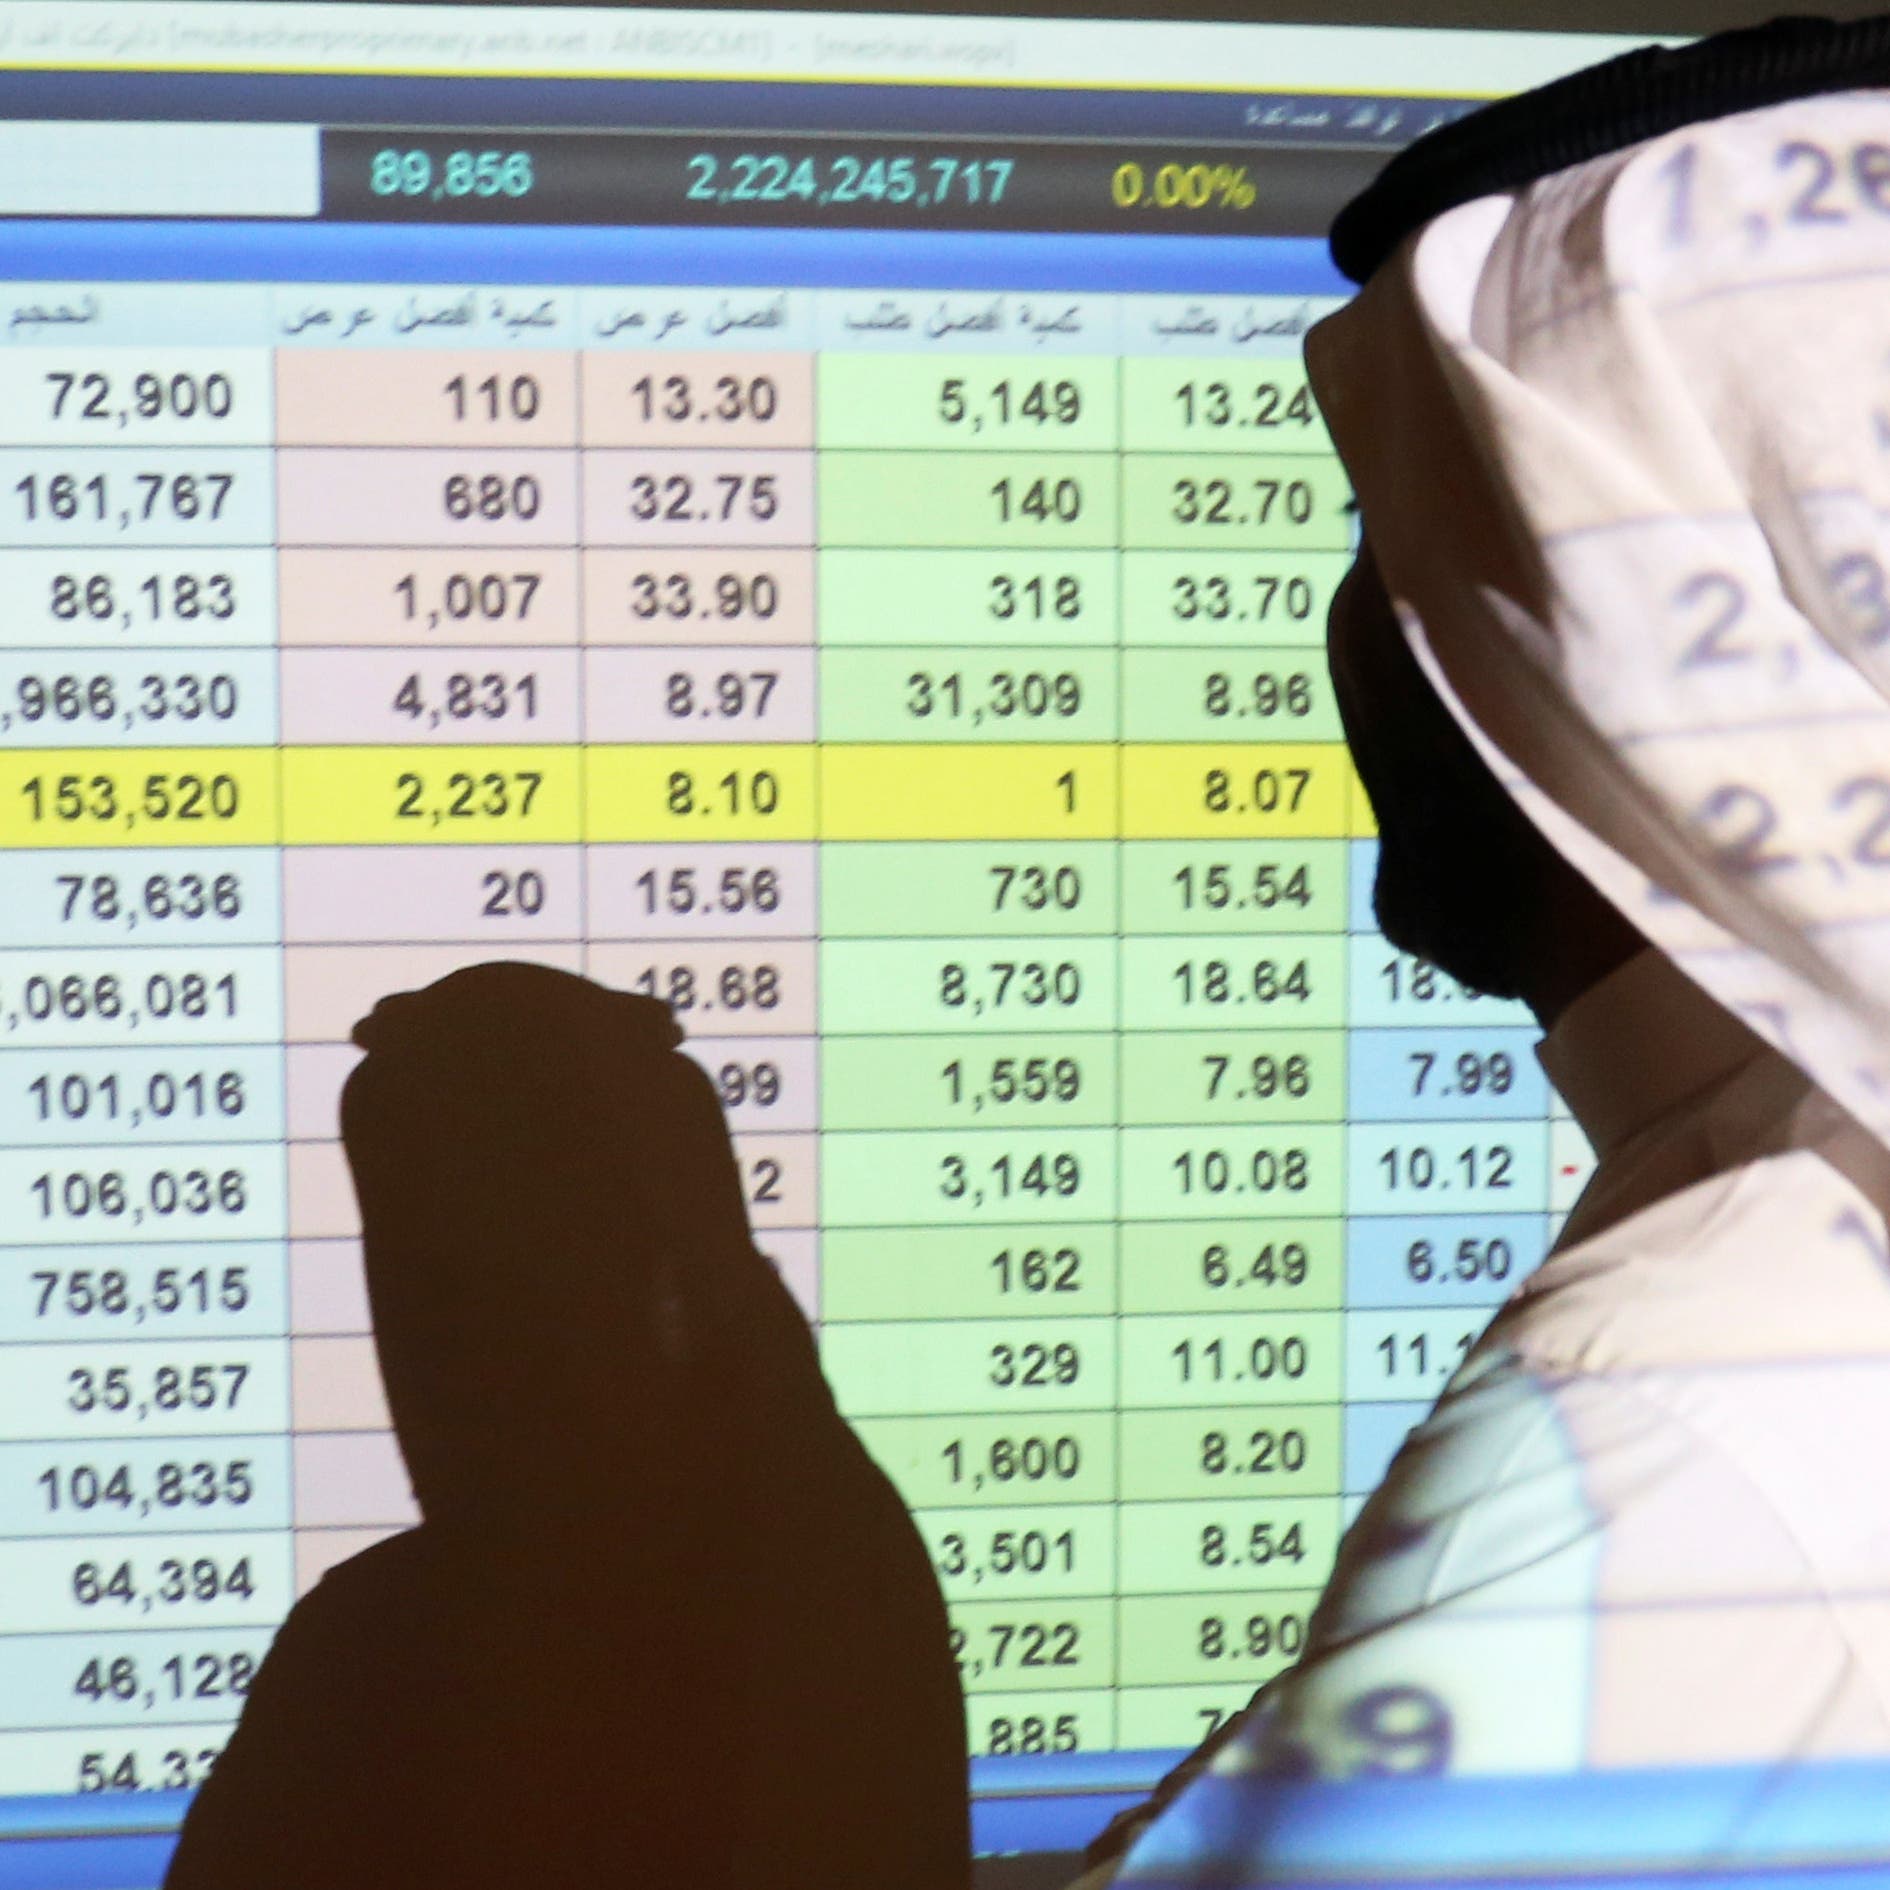 سوق الأسهم السعودية تواصل مكاسبها.. والمؤشر يغلق فوق 11700 نقطة